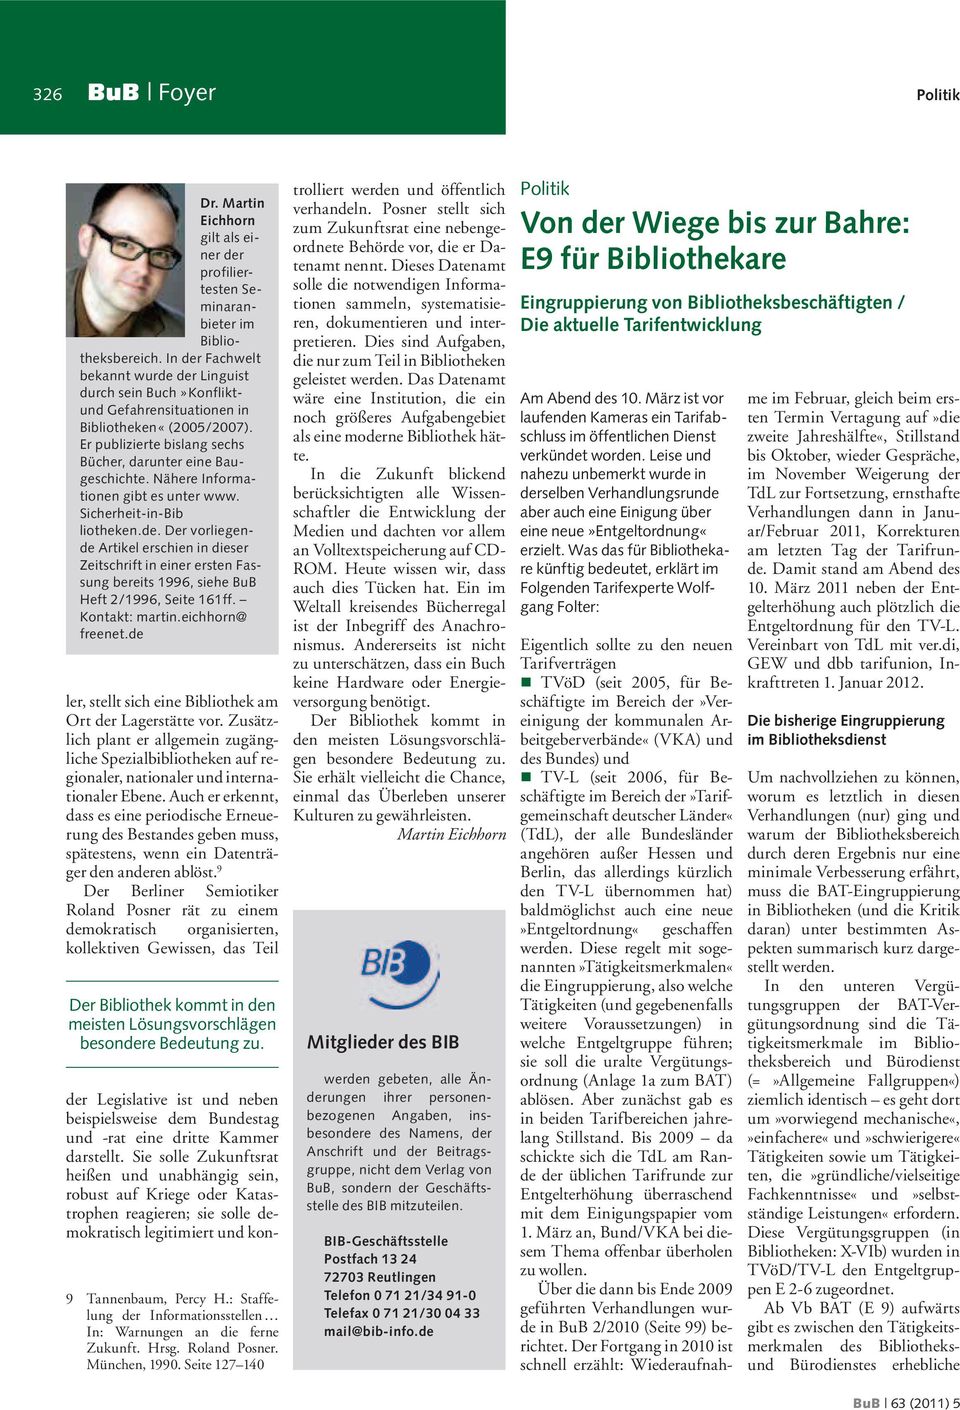 Nähere Informationen gibt es unter www. Sicherheit-in-Bib liotheken.de. Der vorliegende Artikel erschien in dieser Zeitschrift in einer ersten Fassung bereits 1996, siehe BuB Heft 2/1996, Seite 161ff.